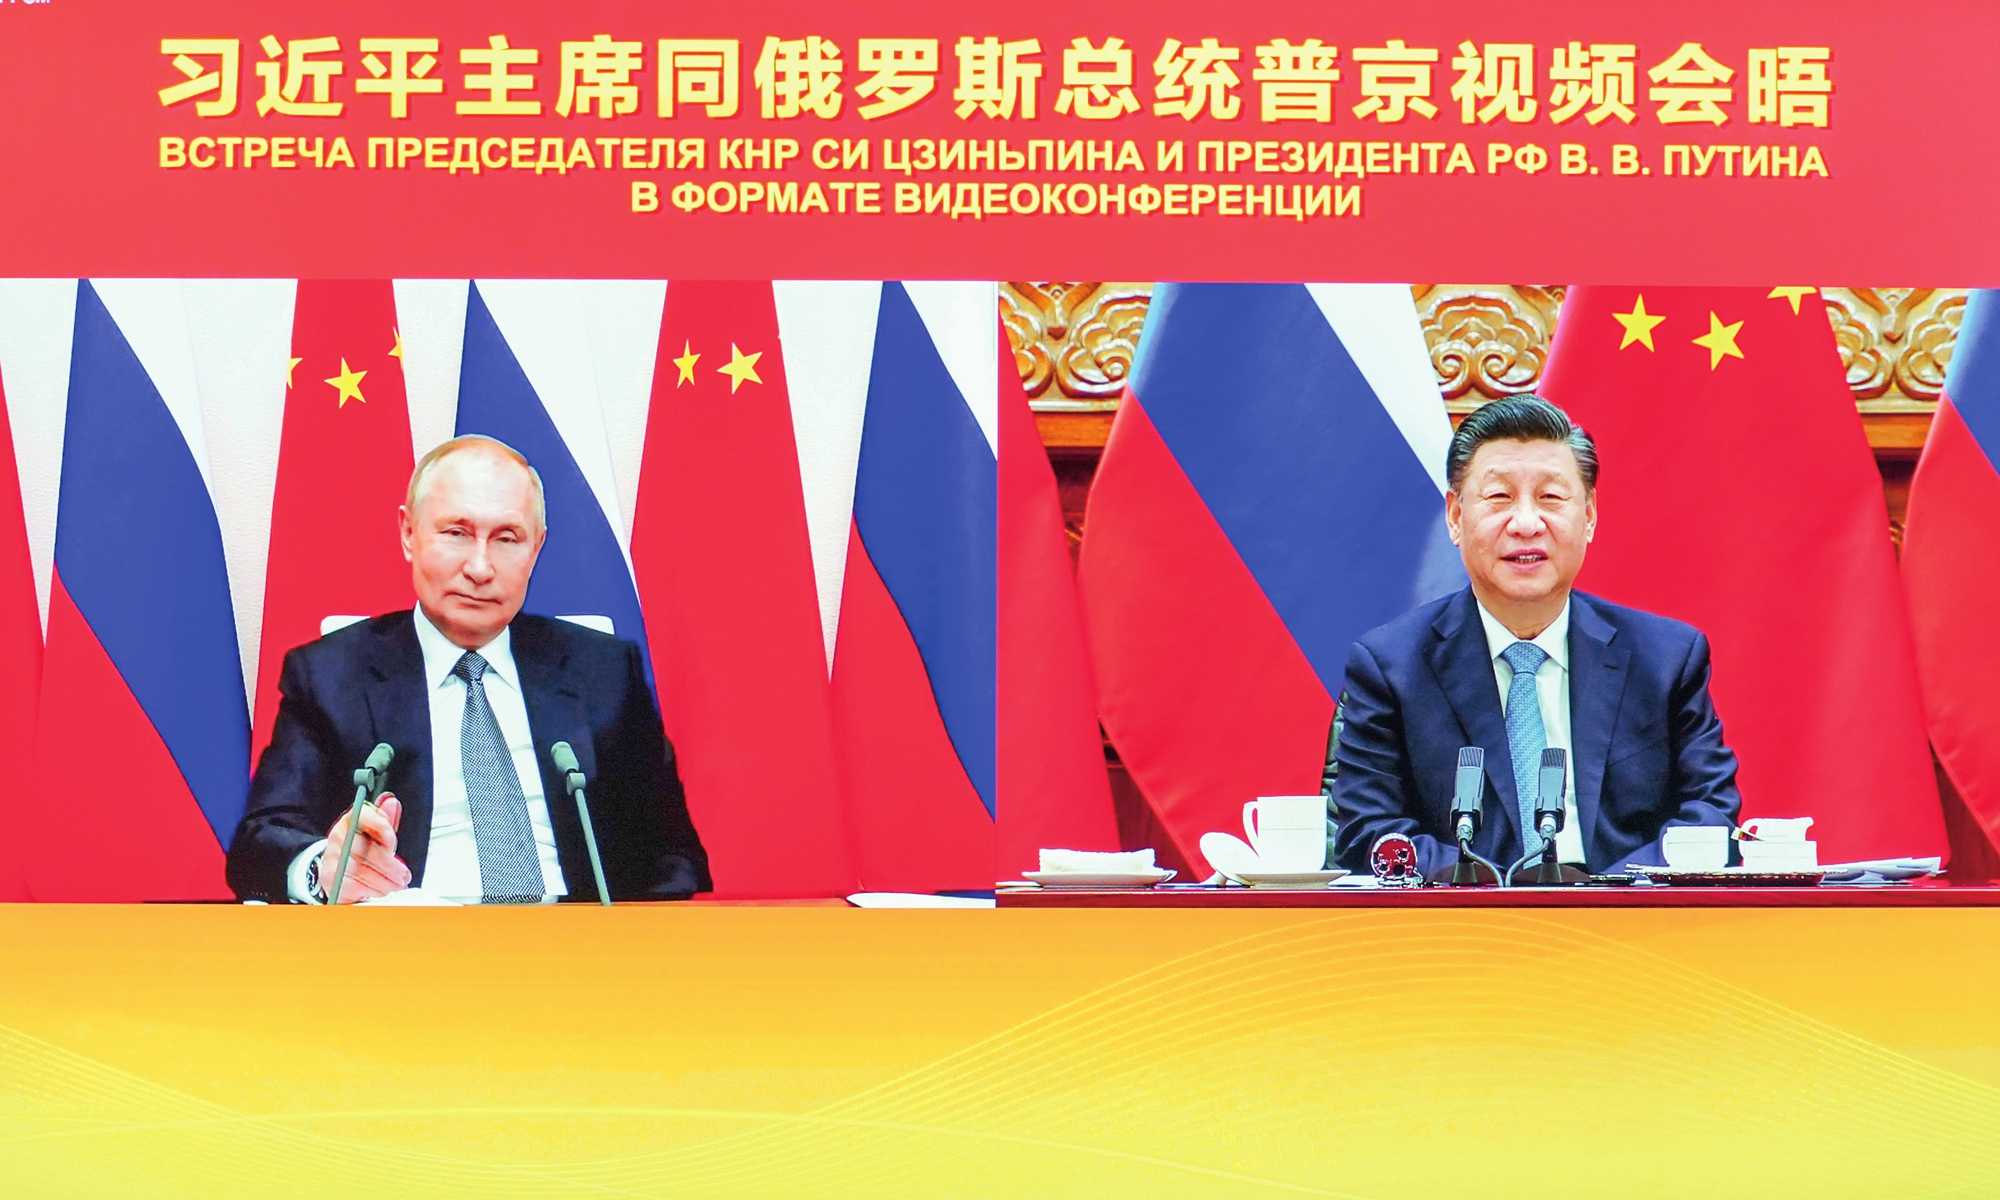 La Cina presenta a Mosca il suo piano di pace. Washington rifiuta, la Ue pensa alle munizioni